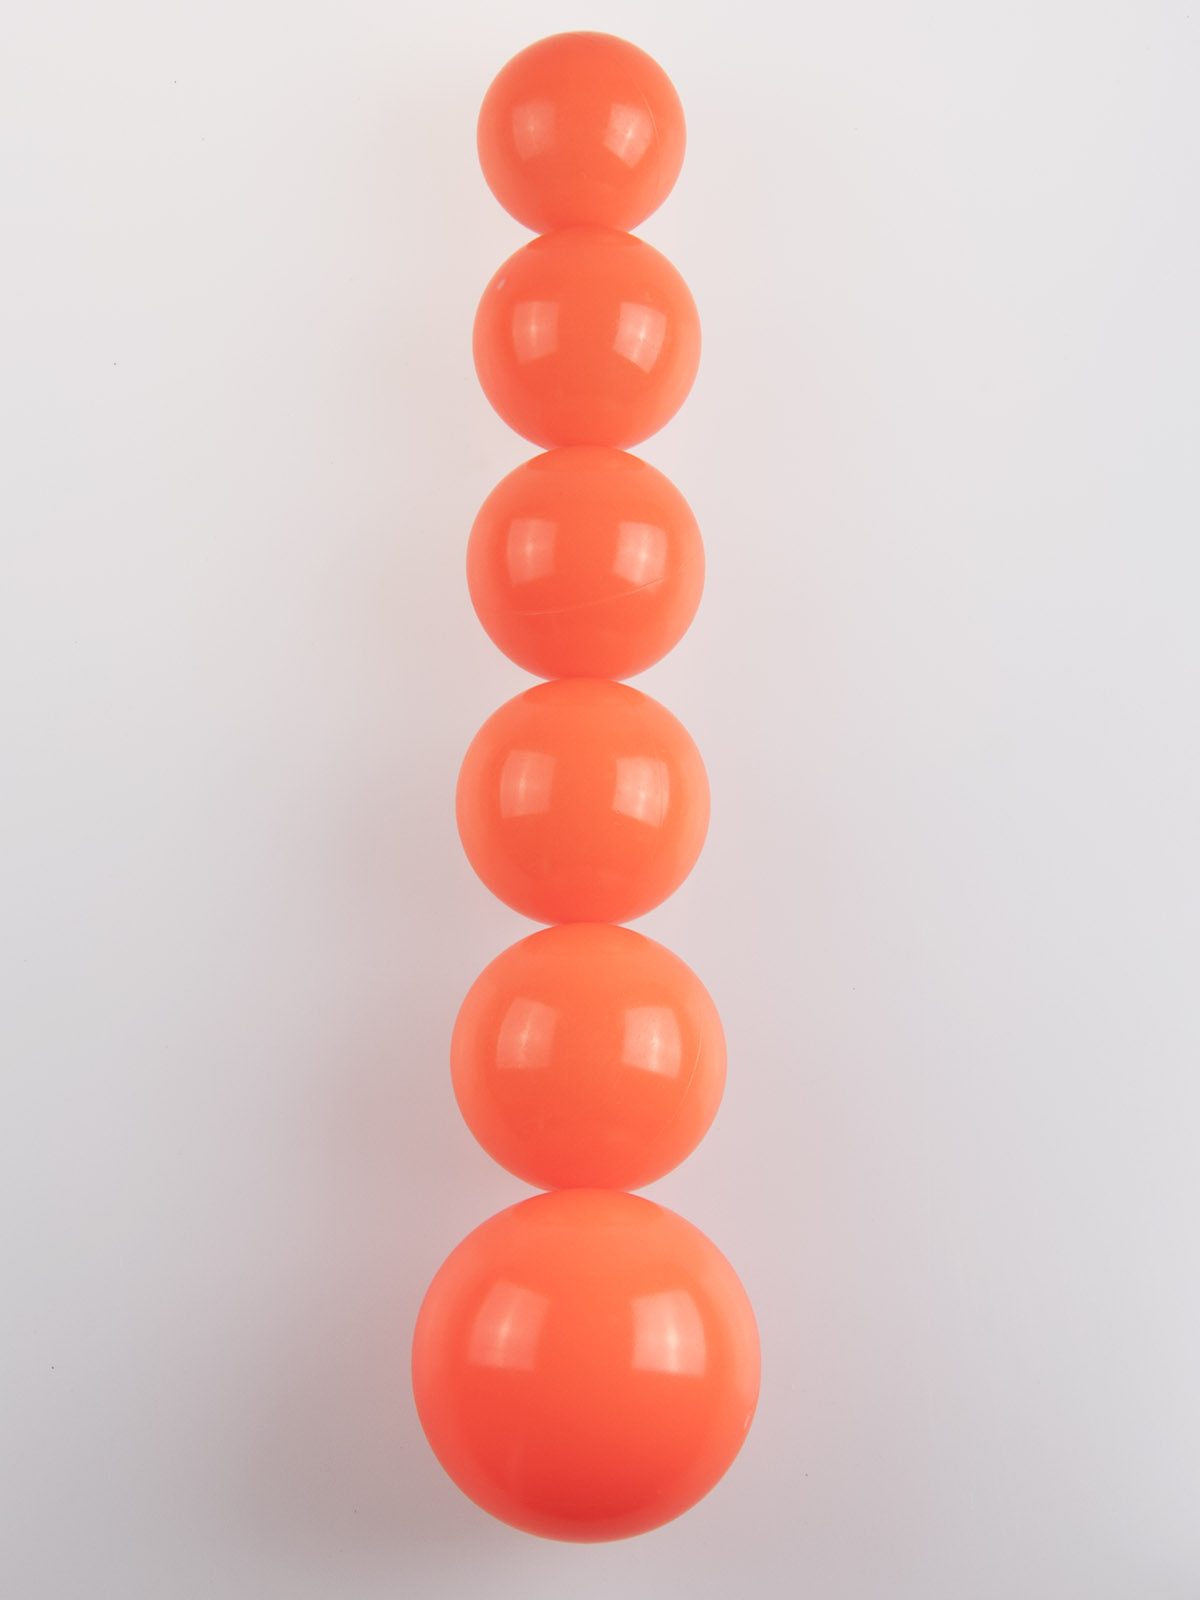 size range of juggling balls